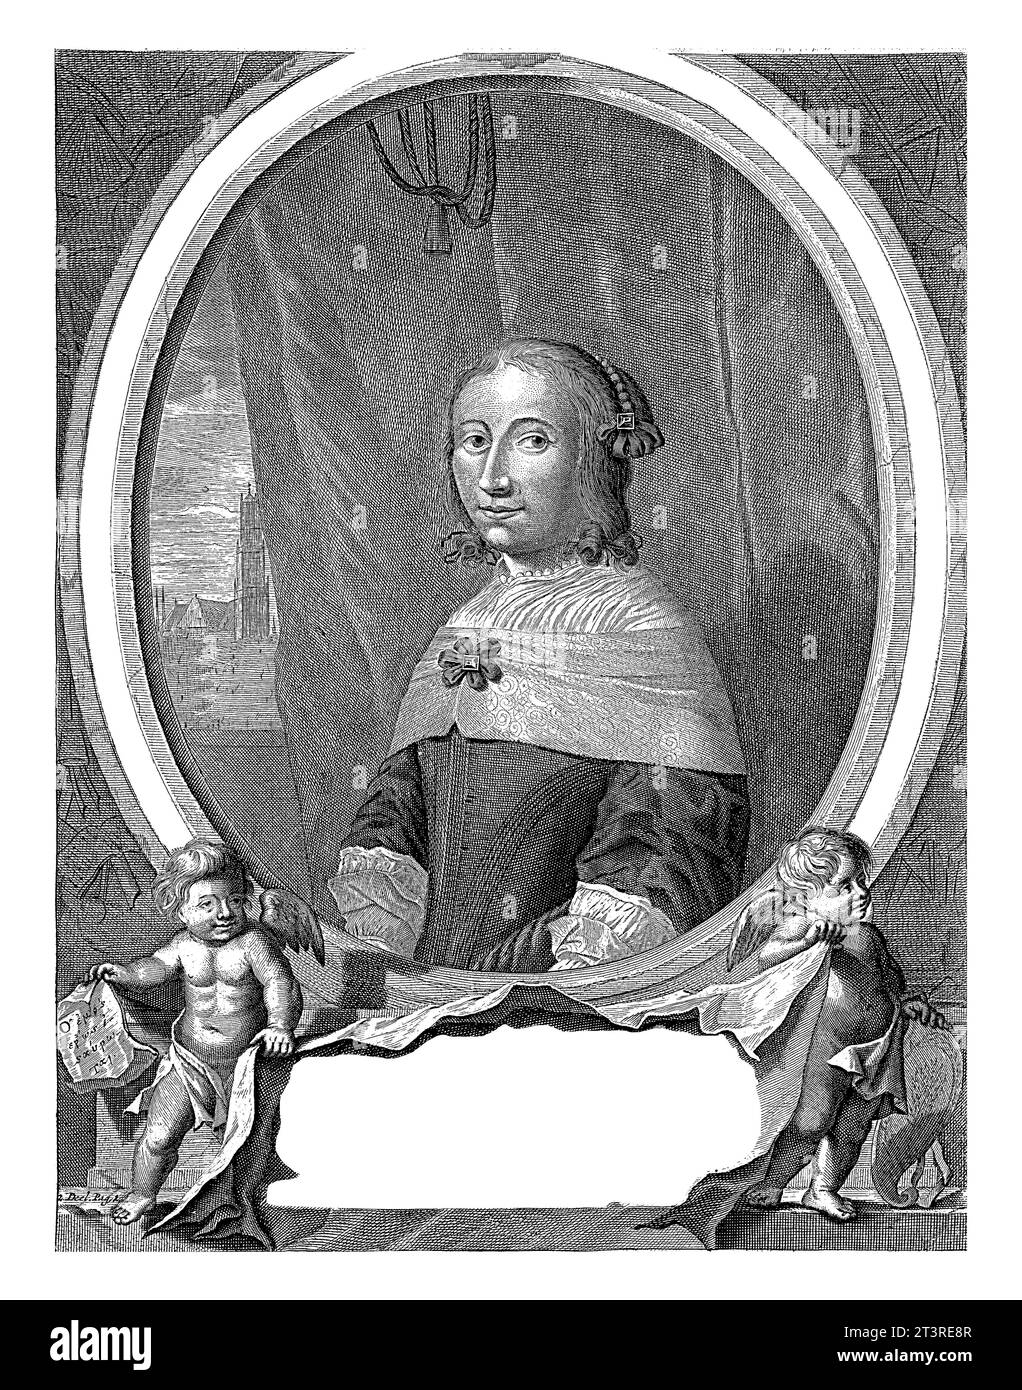 Porträtbüste in Oval links von Anna Maria van Schurman, Künstlerin und Dichterin, barköpfig. Links von der dargestellten Person befindet sich ein Blick auf den Dom Stockfoto